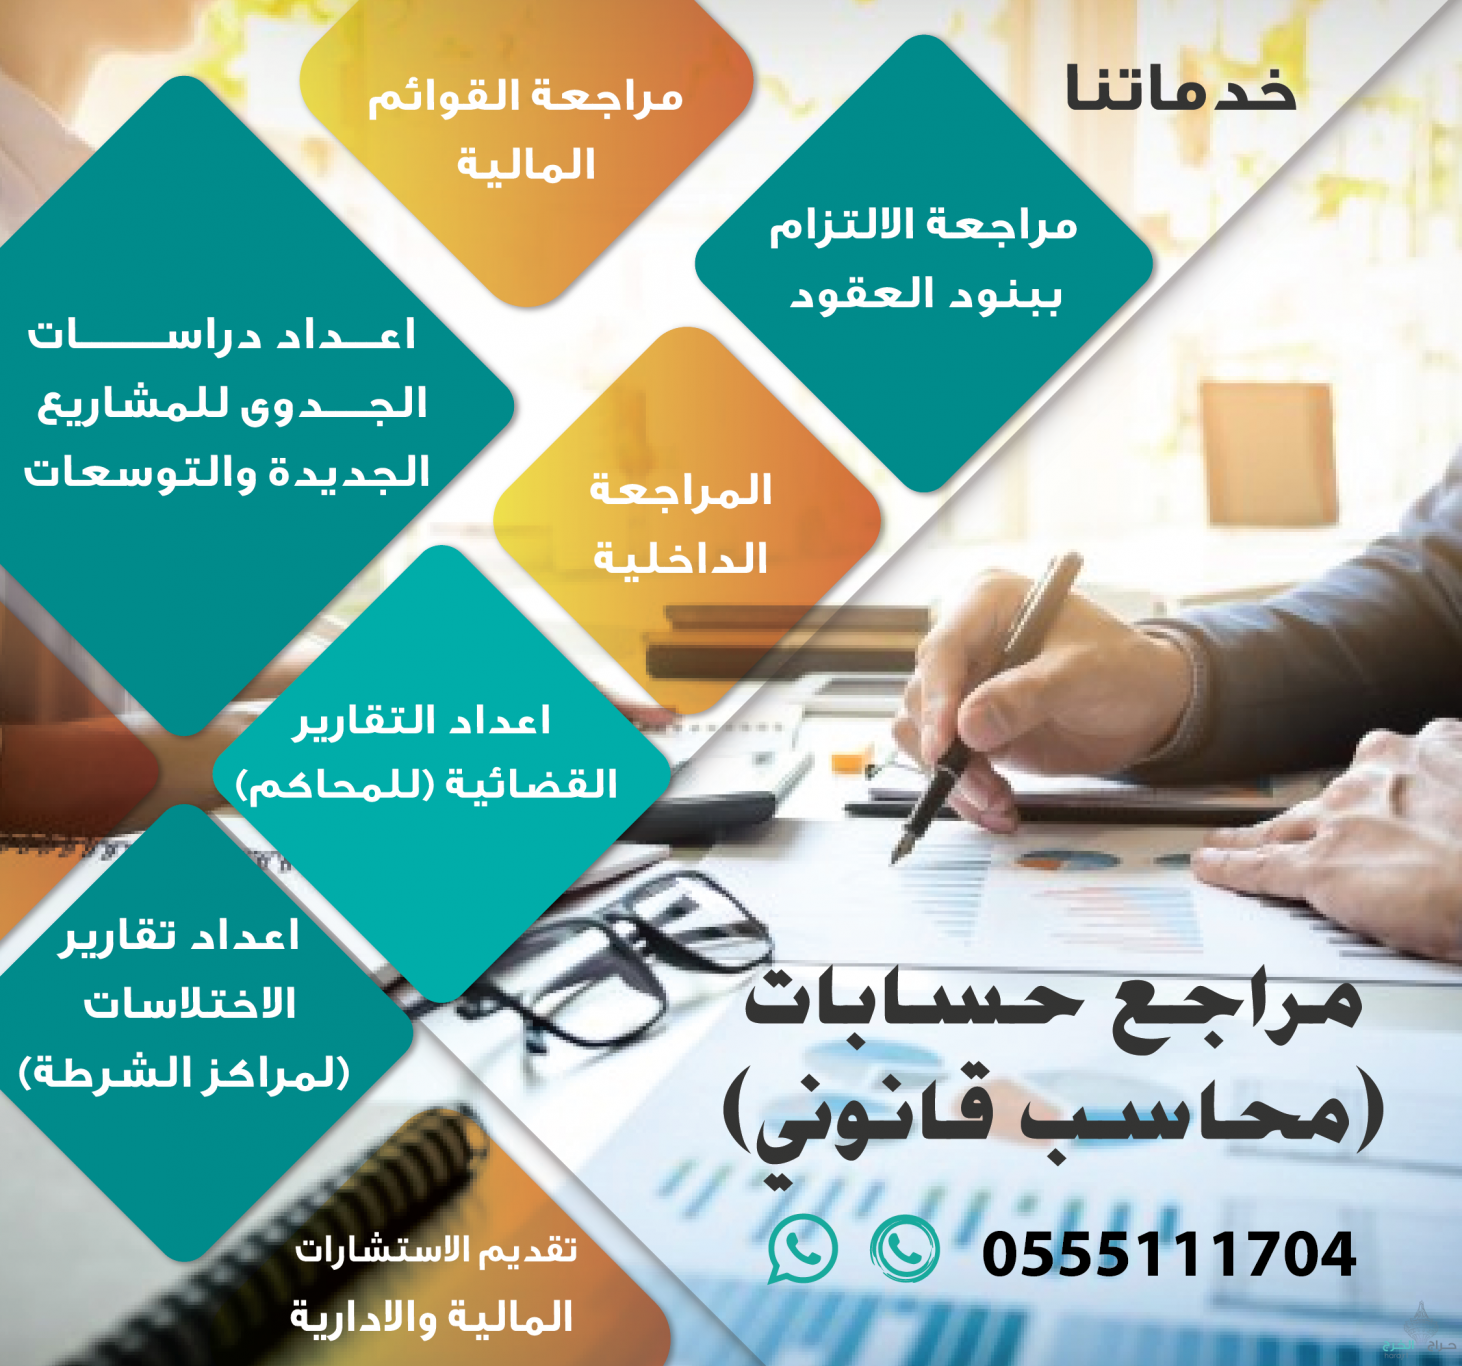 مكتب مرخص لتقديم خدمات المحاسبة والمراجعة في الرياض